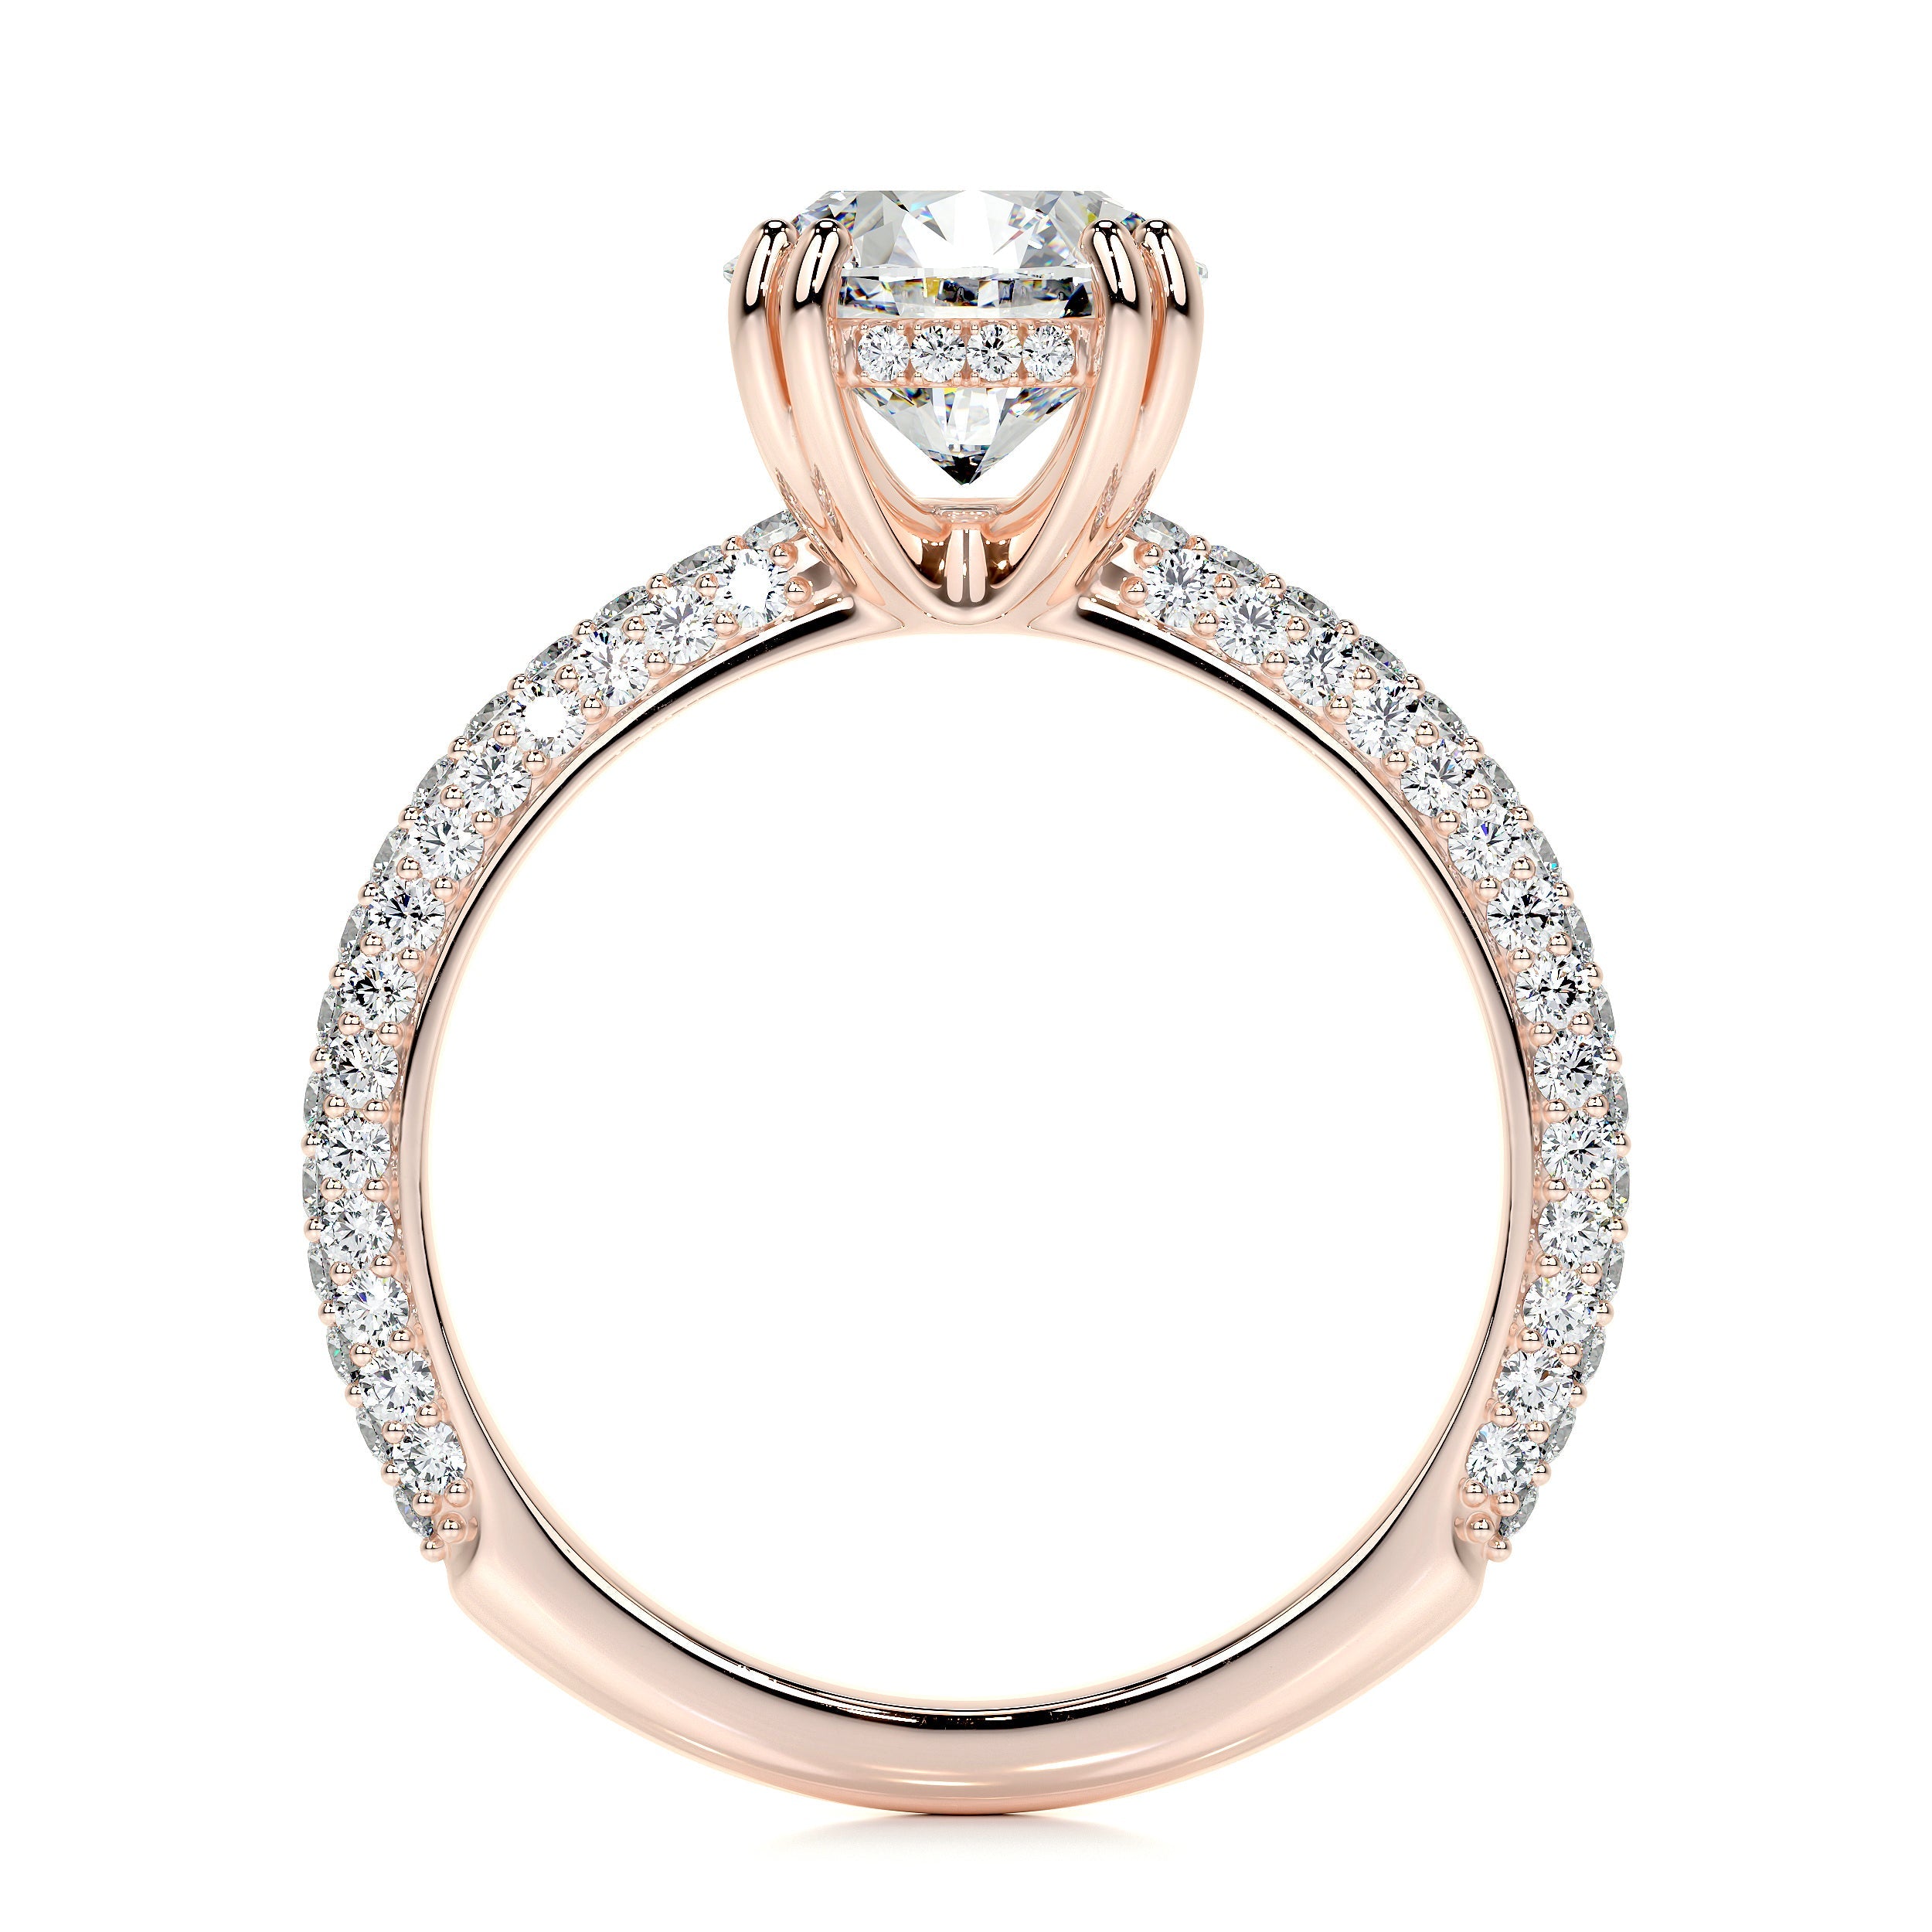 Lorena Lab Grown Diamond Ring   (2.5 Carat) -14K Rose Gold